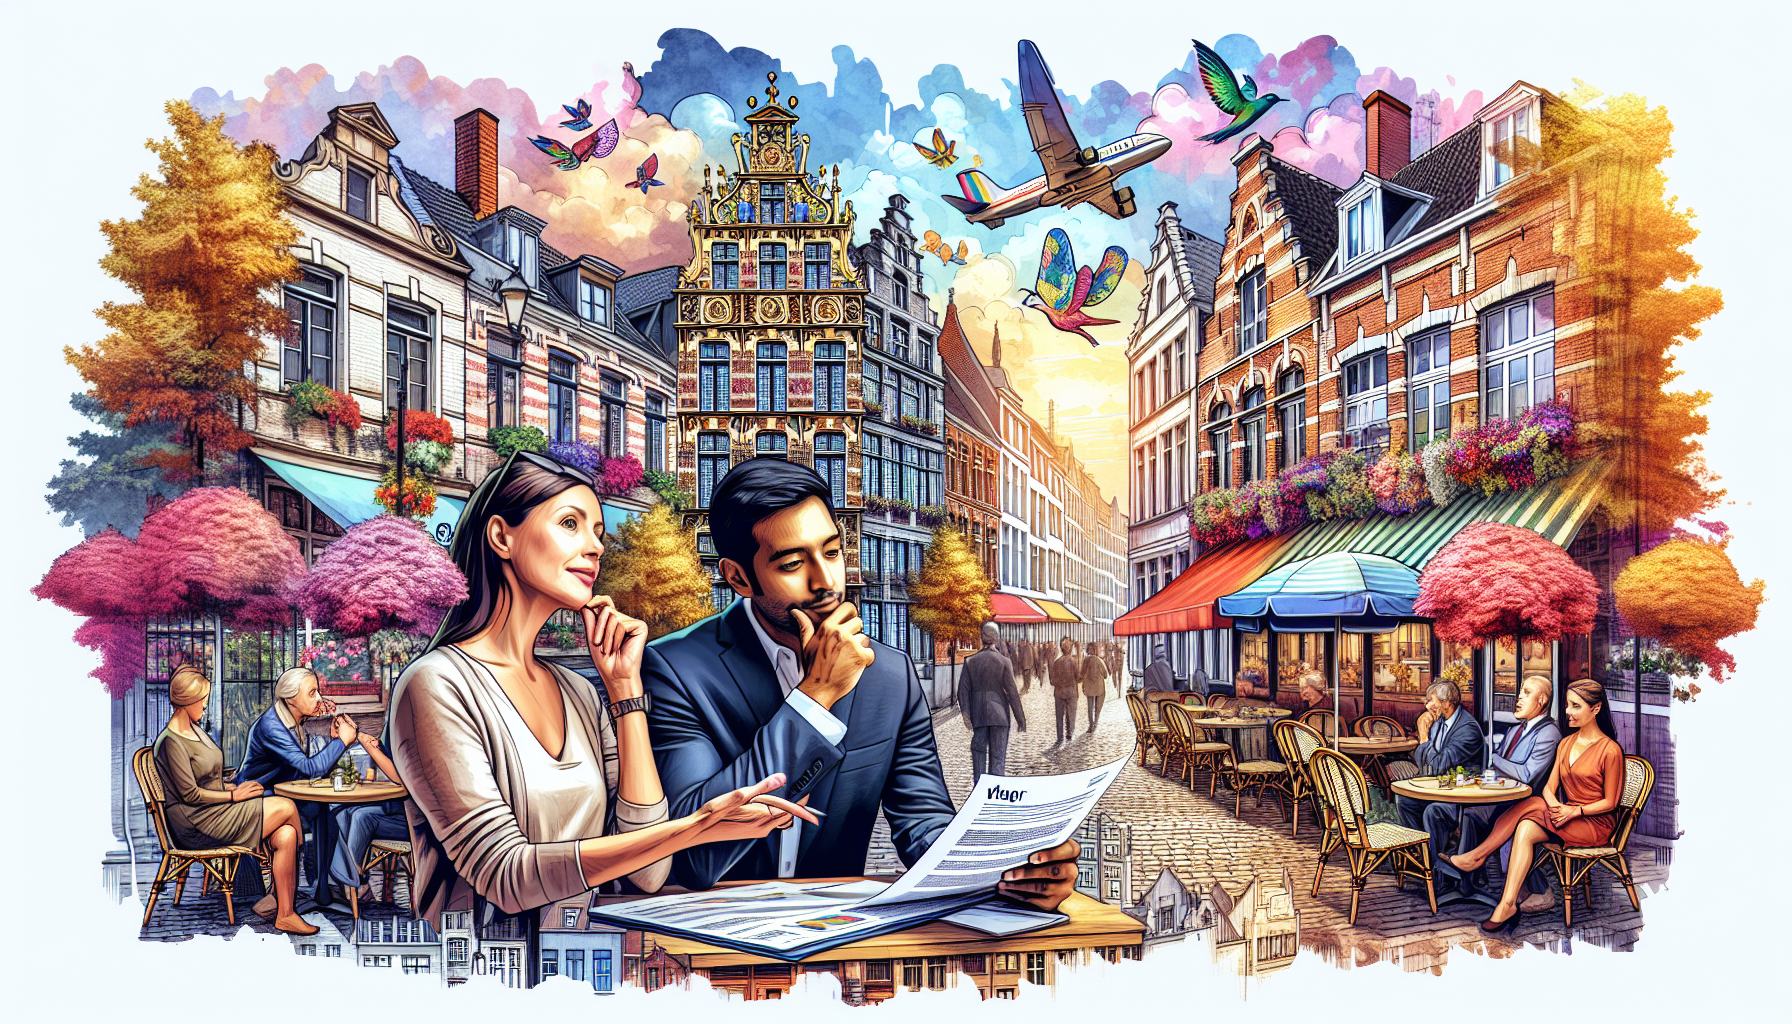 découvrez les avantages d'investir dans le viager en belgique et les opportunités qu'offre ce marché immobilier particulier.